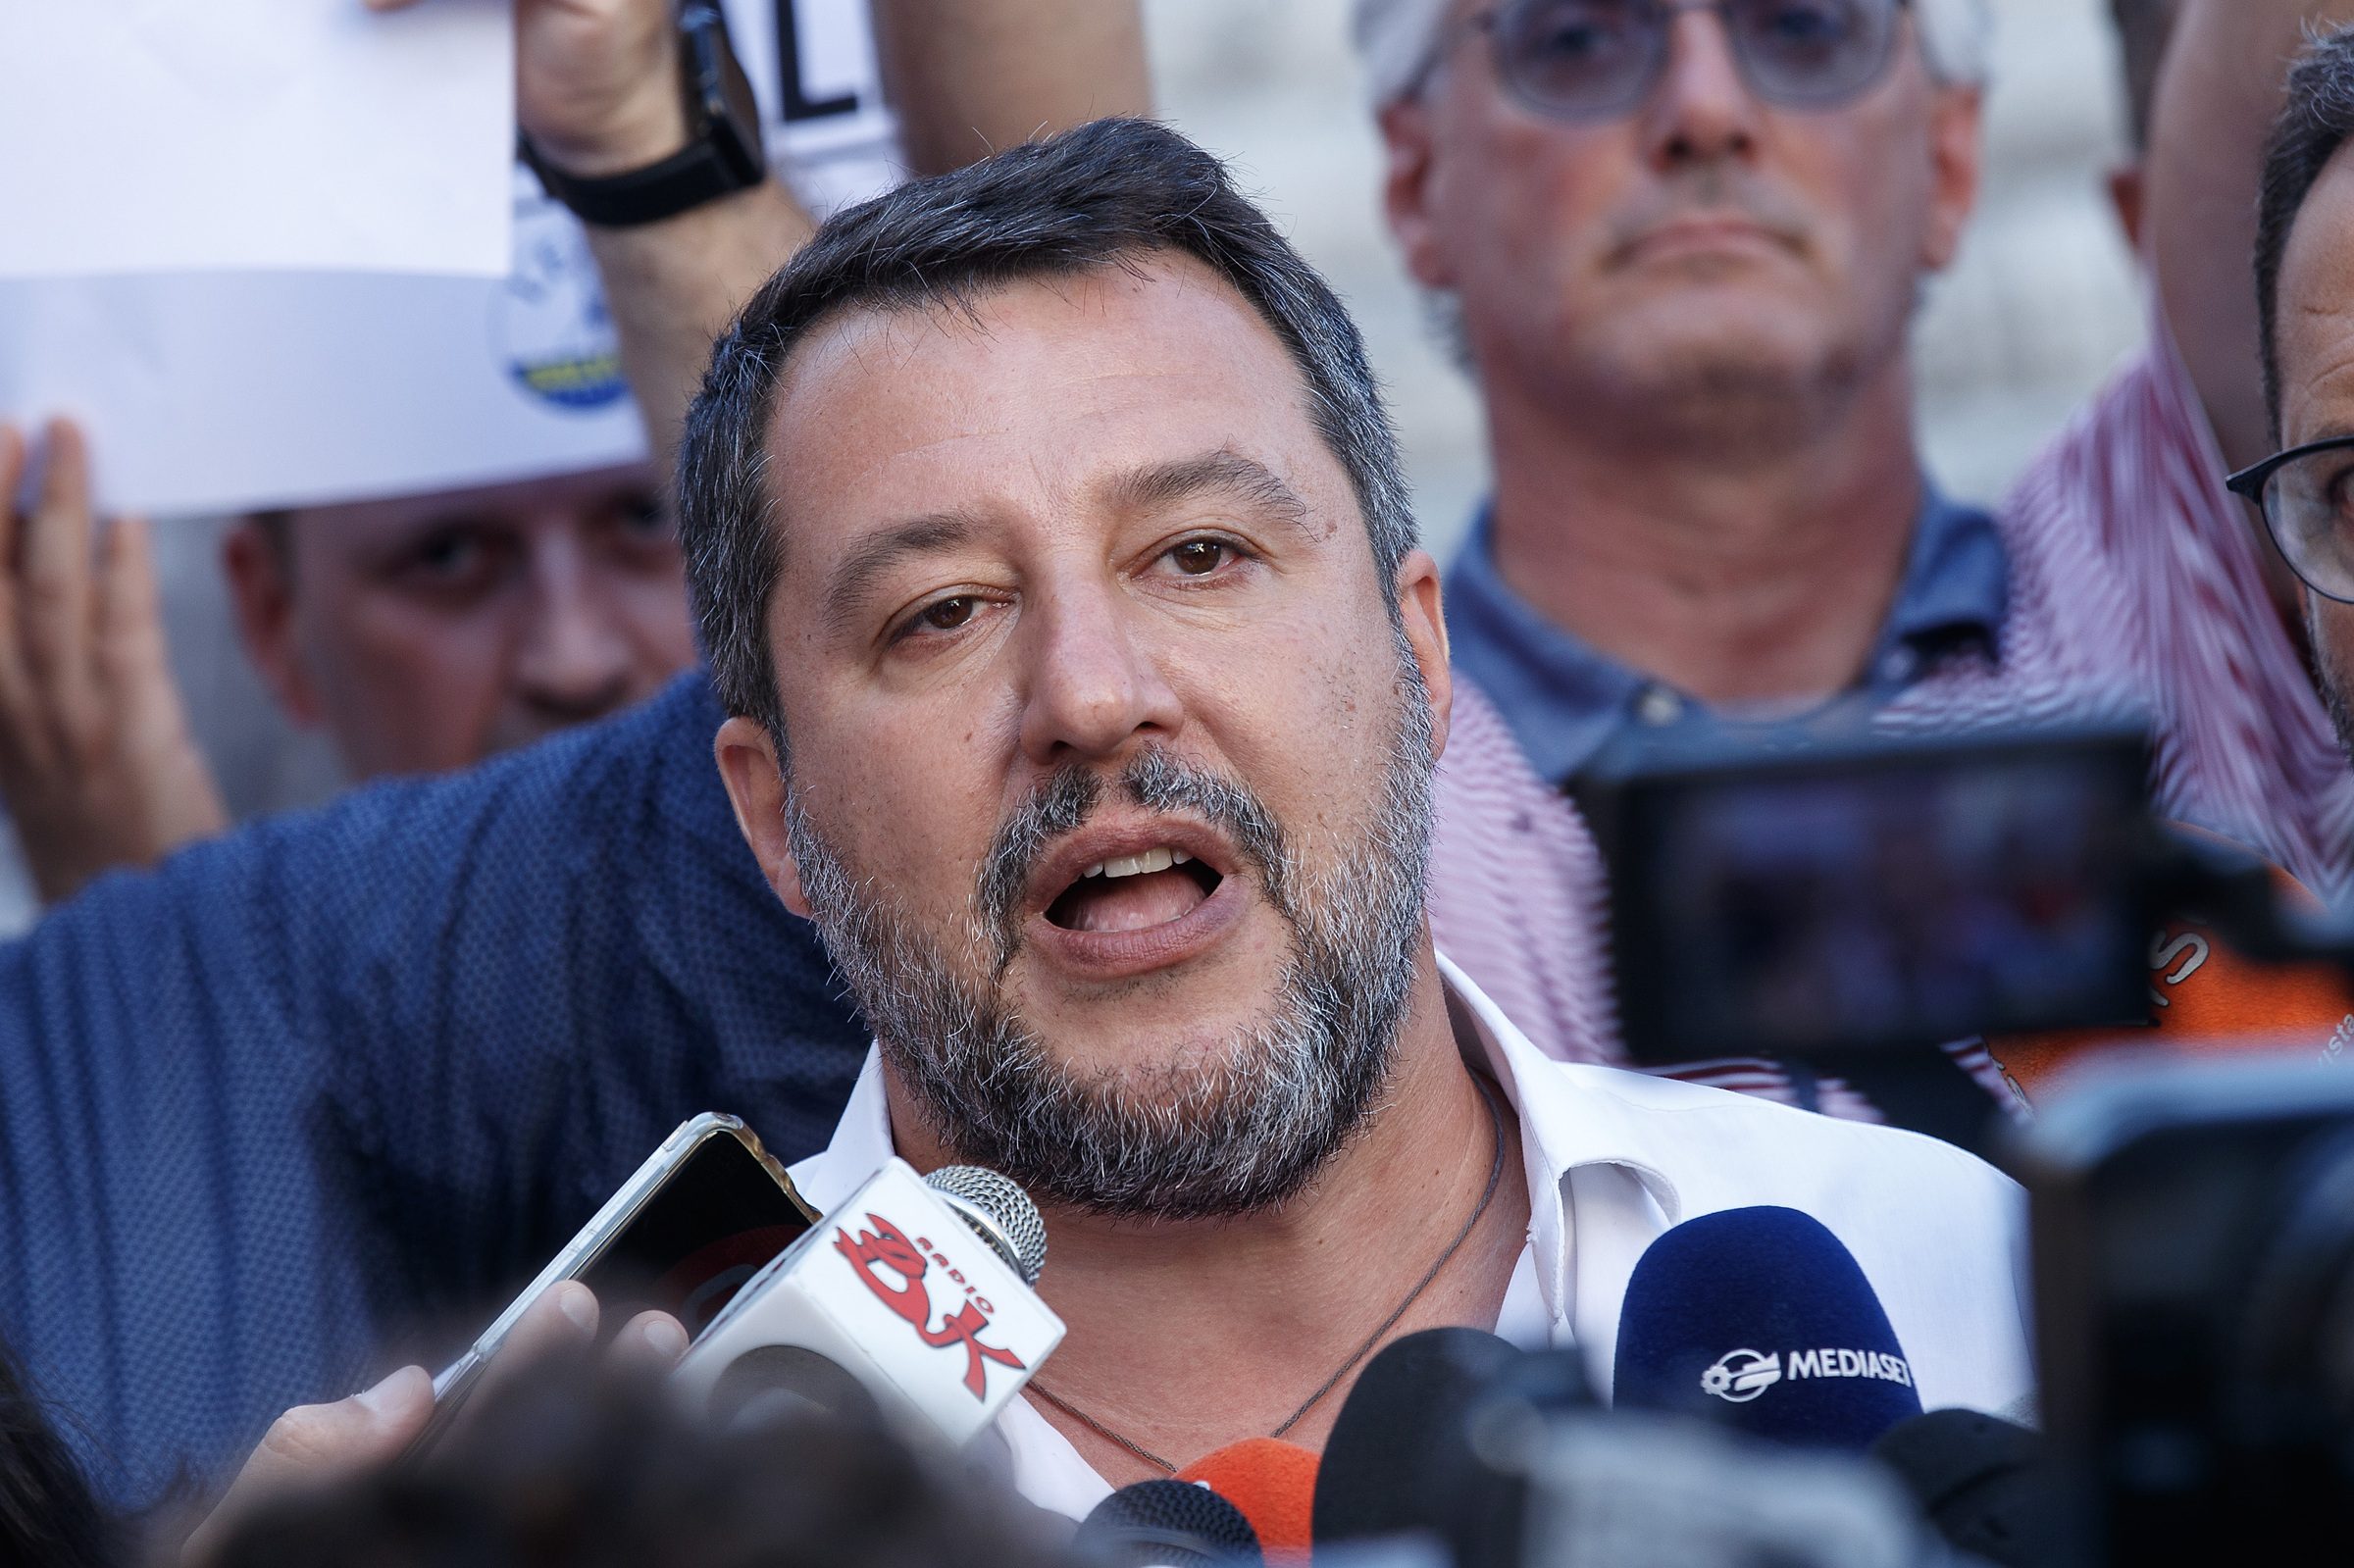 Elezioni, Salvini: "Il programma è pronto, mi impegno per autonomia e superamento della Fornero"